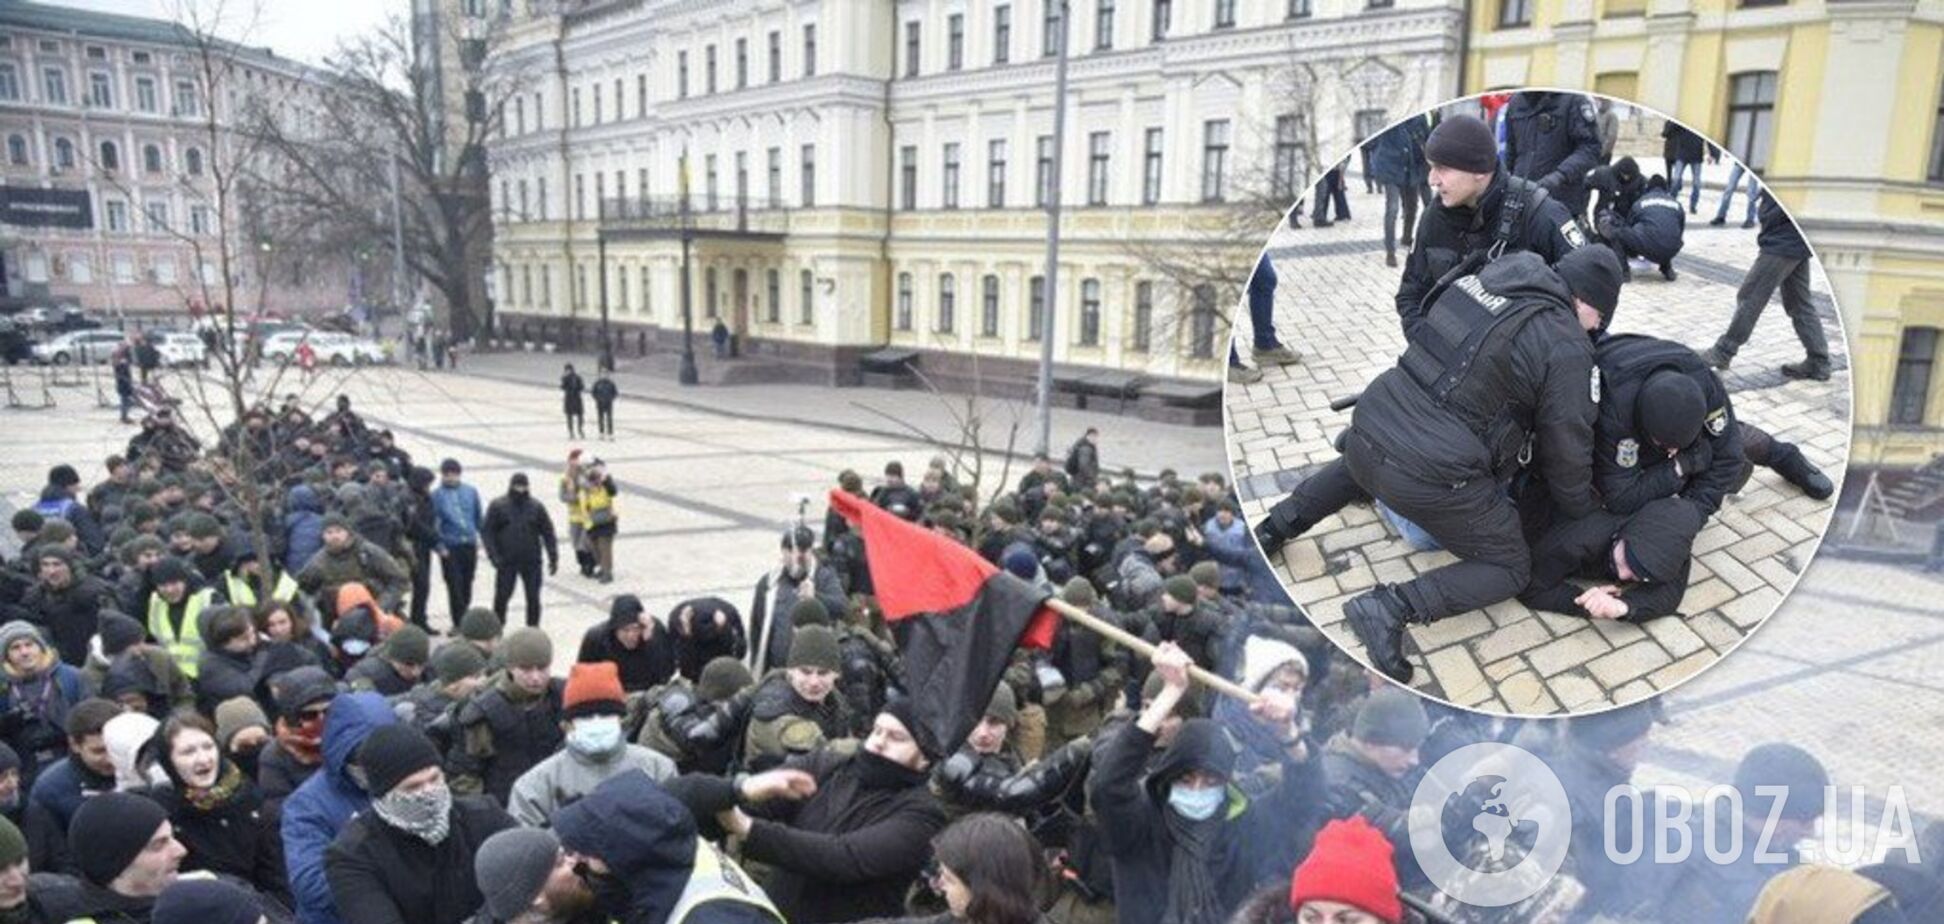 Яйца, петарды и задержания: как в Киеве прошло шествие антифашистов. Фото